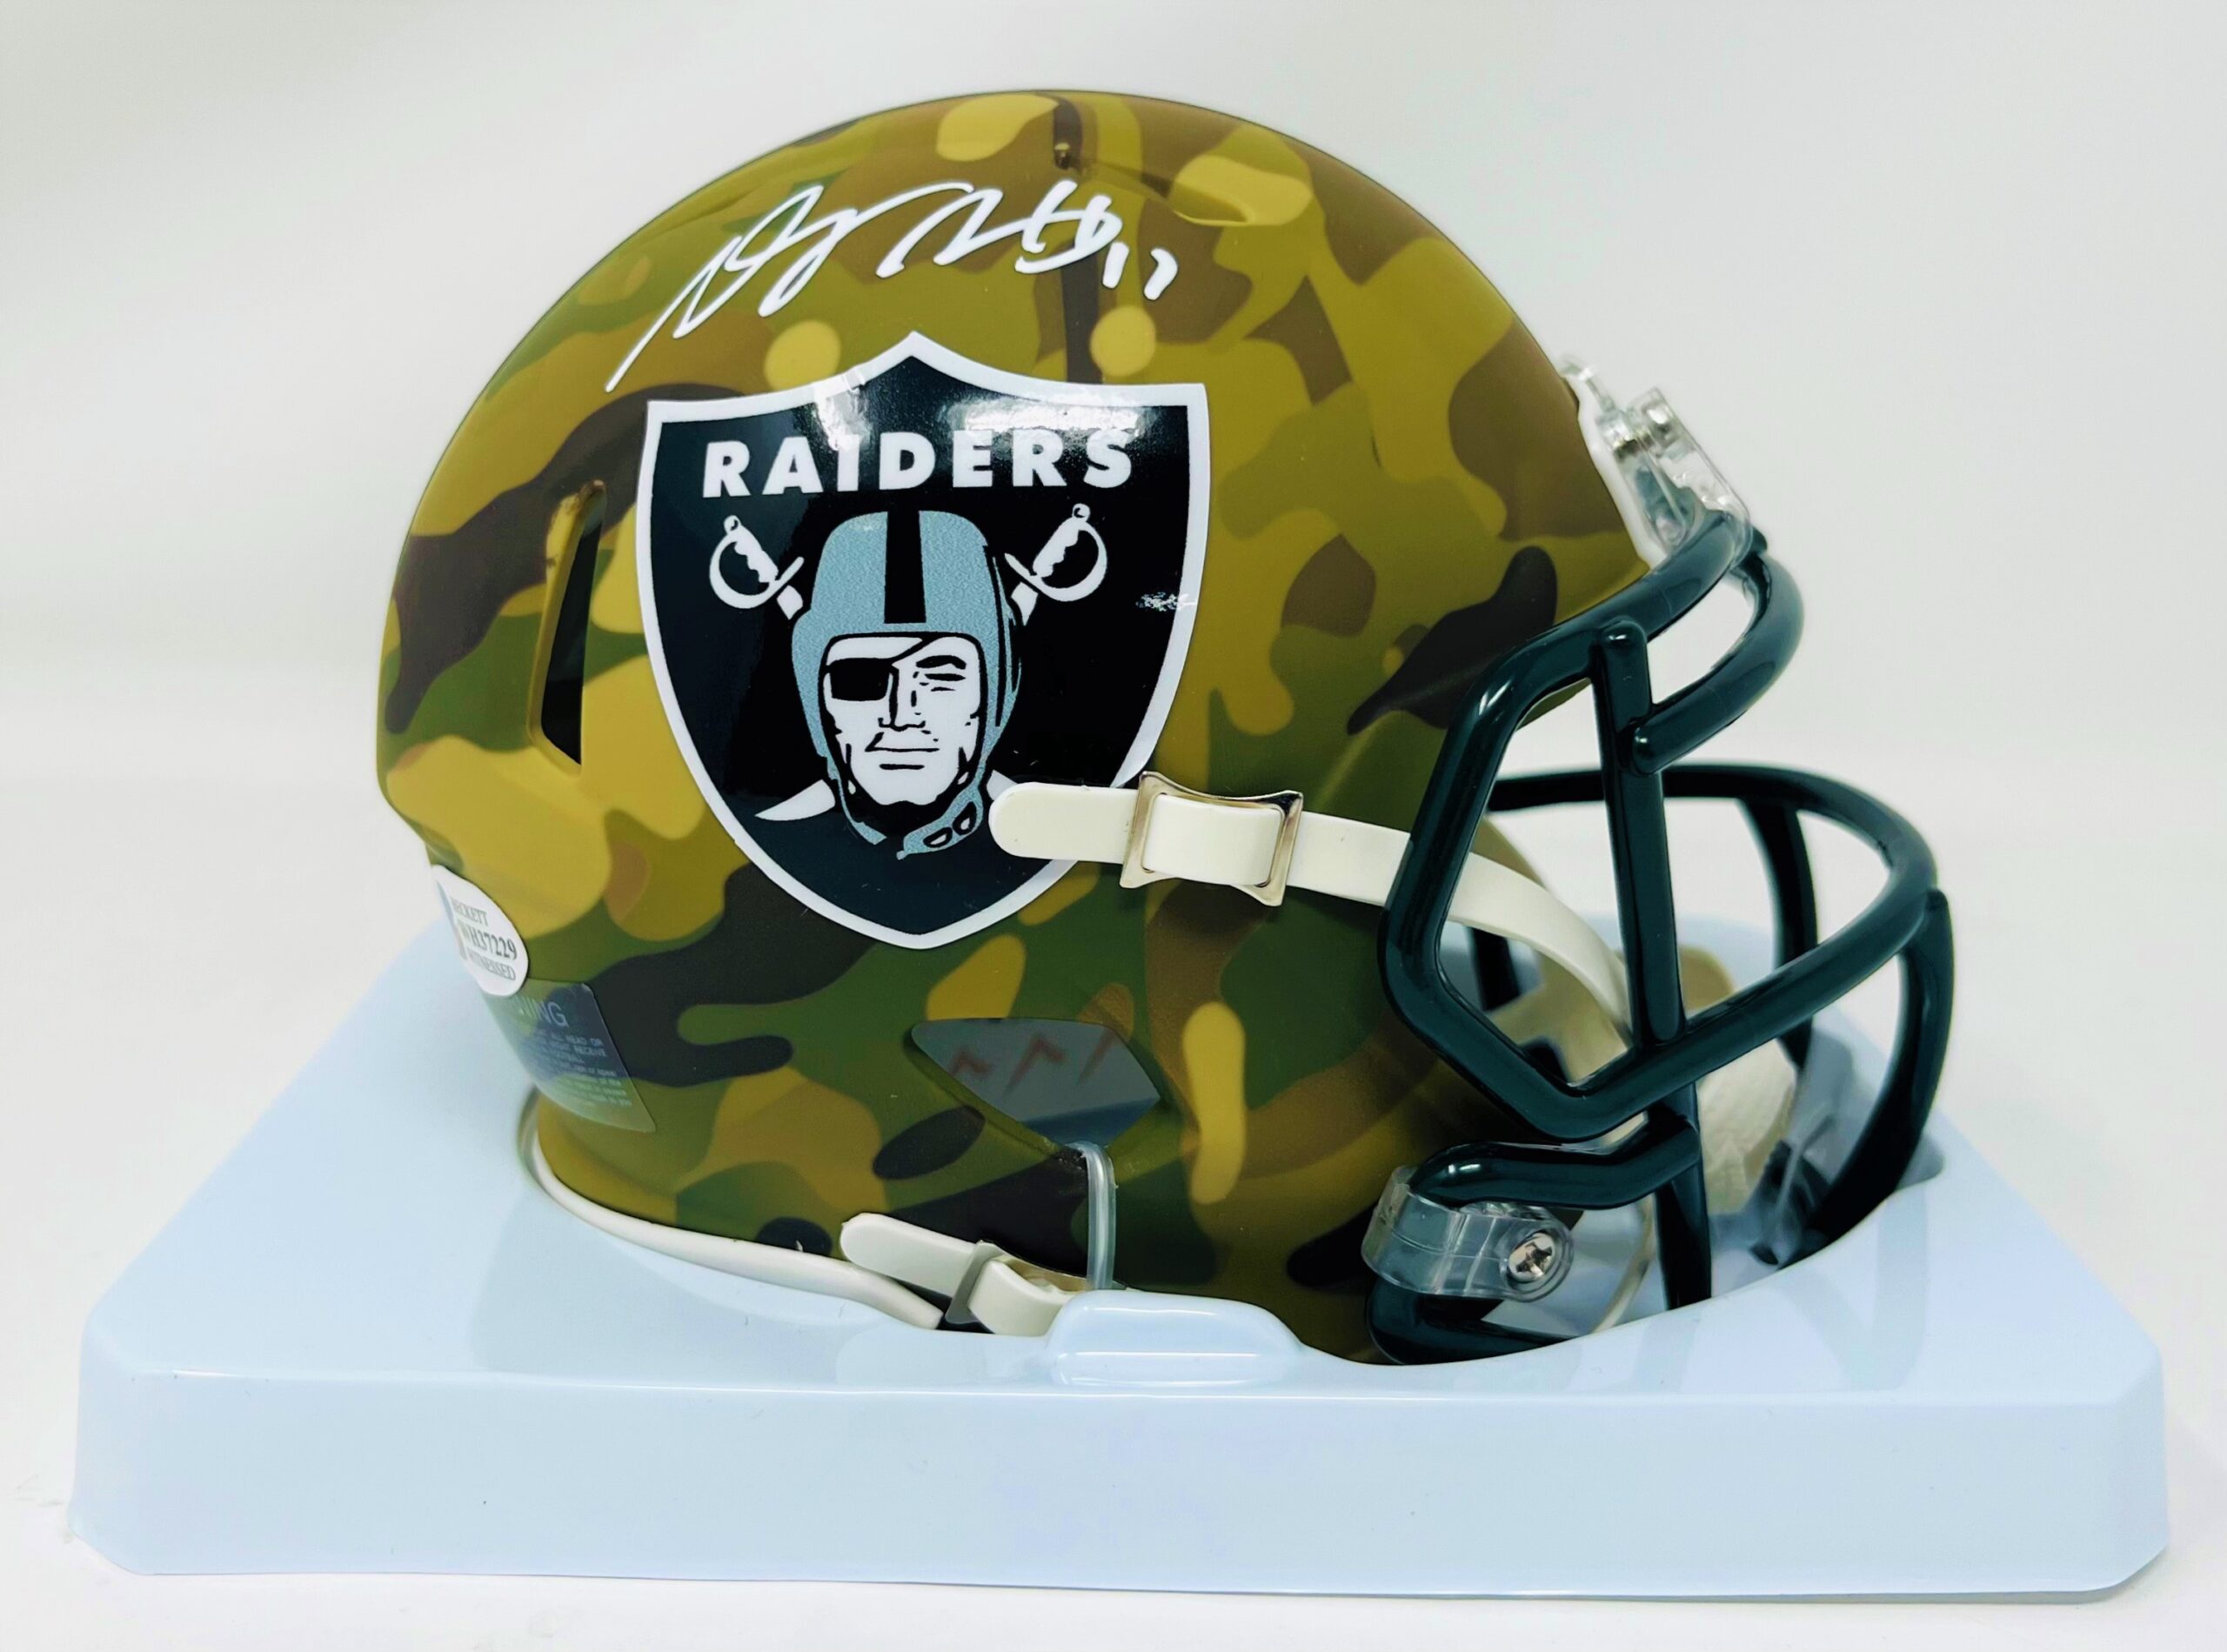 Las Vegas Raiders Authentic Speed Football Helmet | Riddell